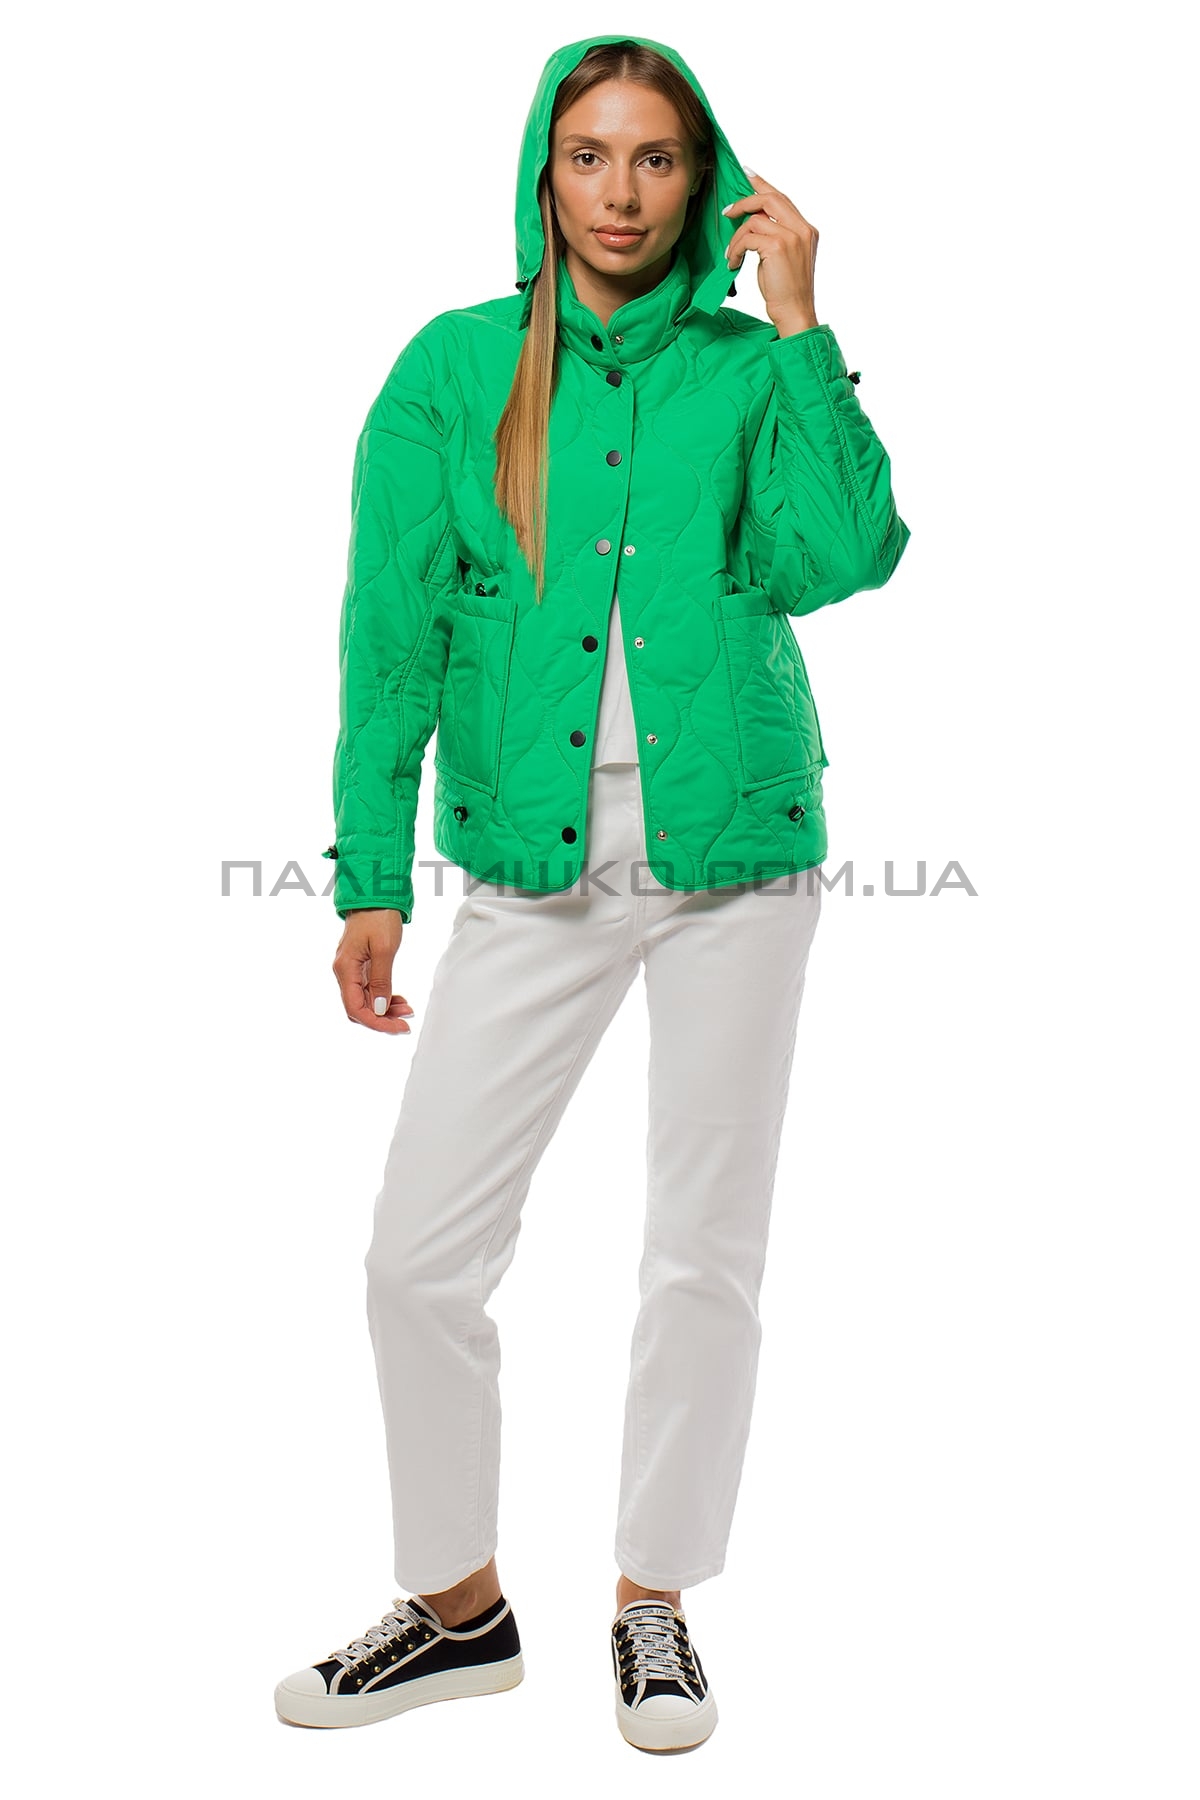  Жіноча куртка зелена